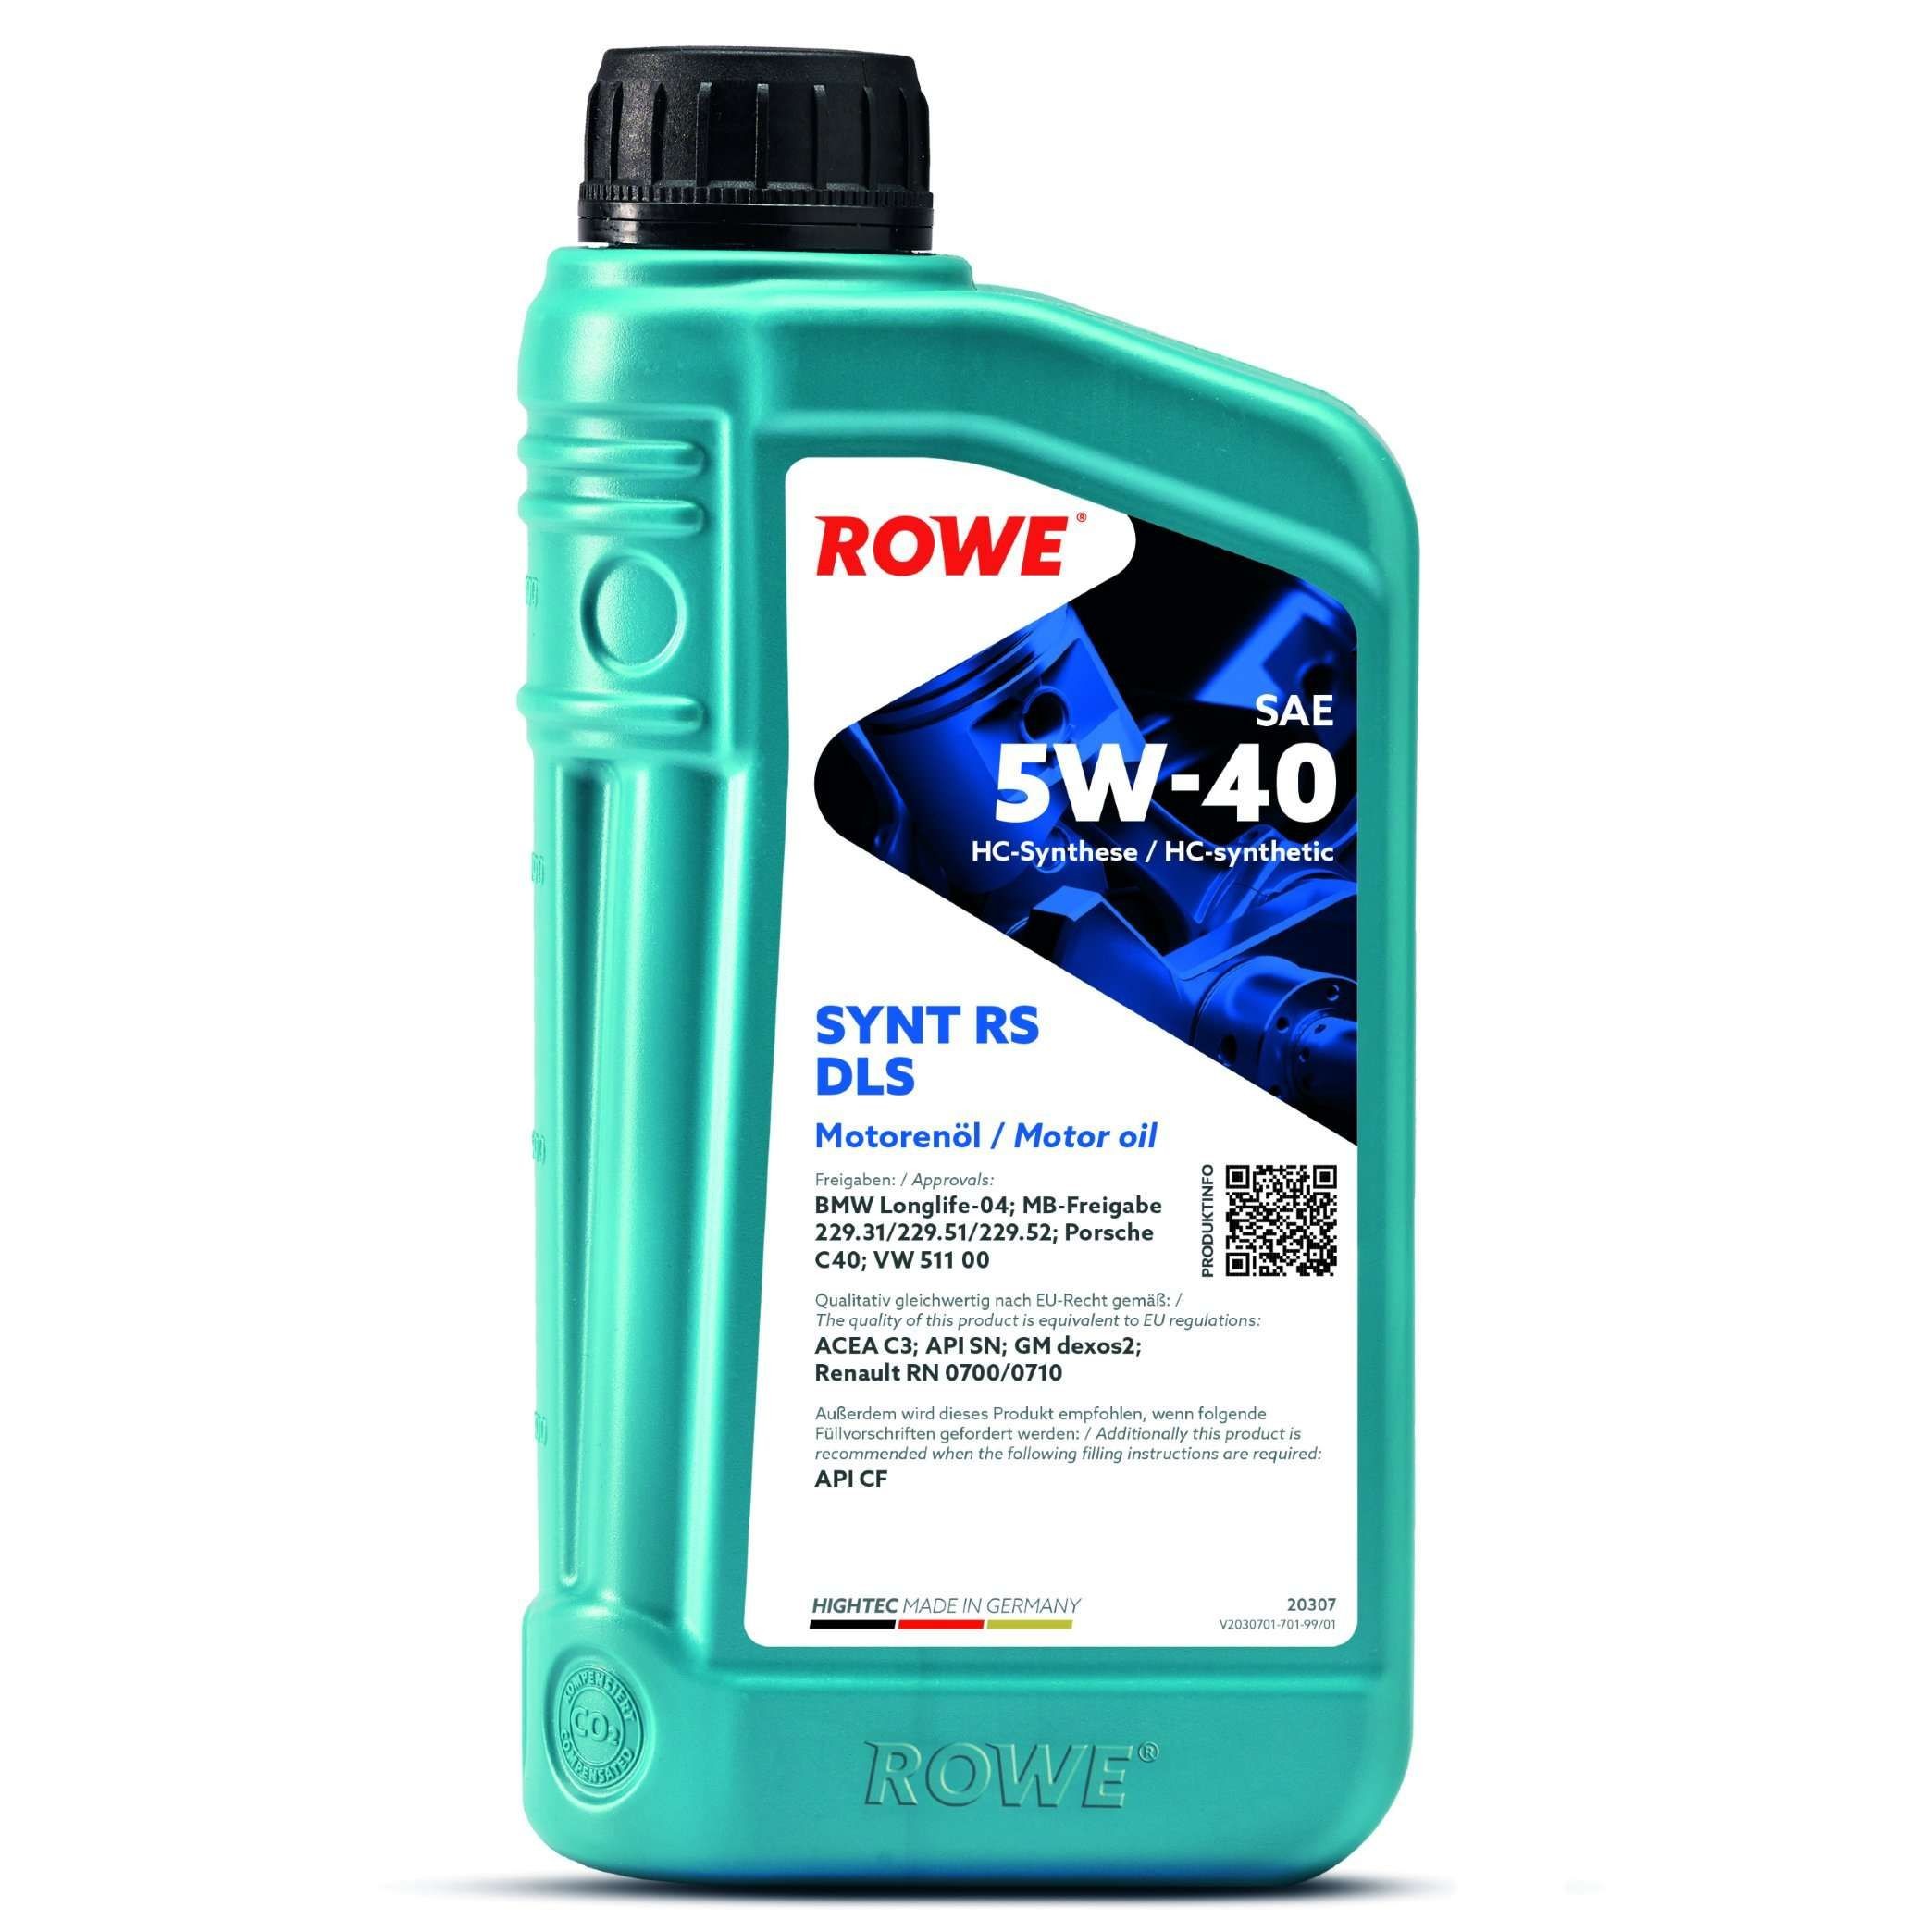 Original ROWE Car oil 20307-0010-99 for HONDA S2000